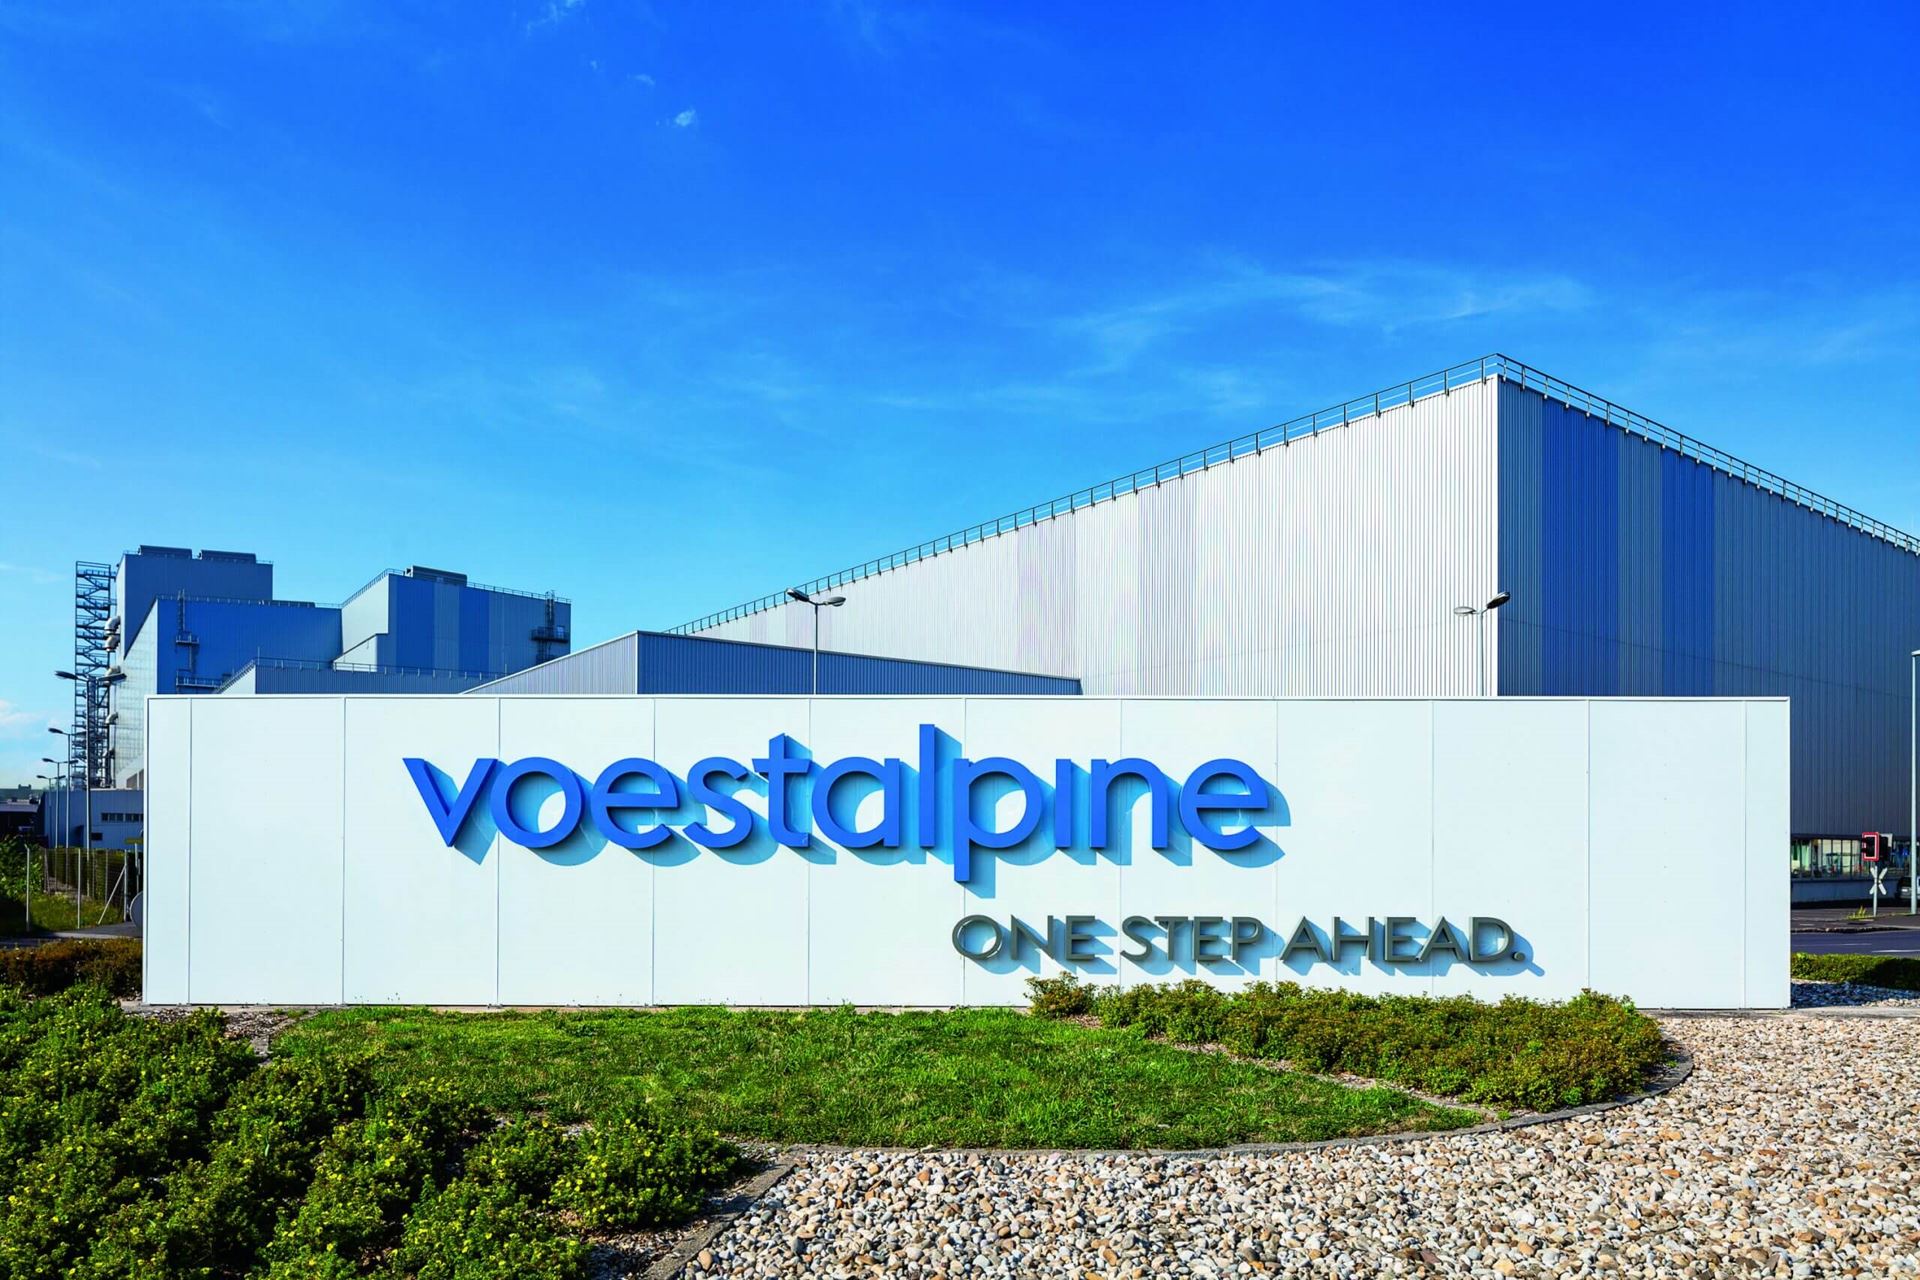 Avusturyalı çelik devi, Almanya’daki fabrikasını satmayı planlıyor